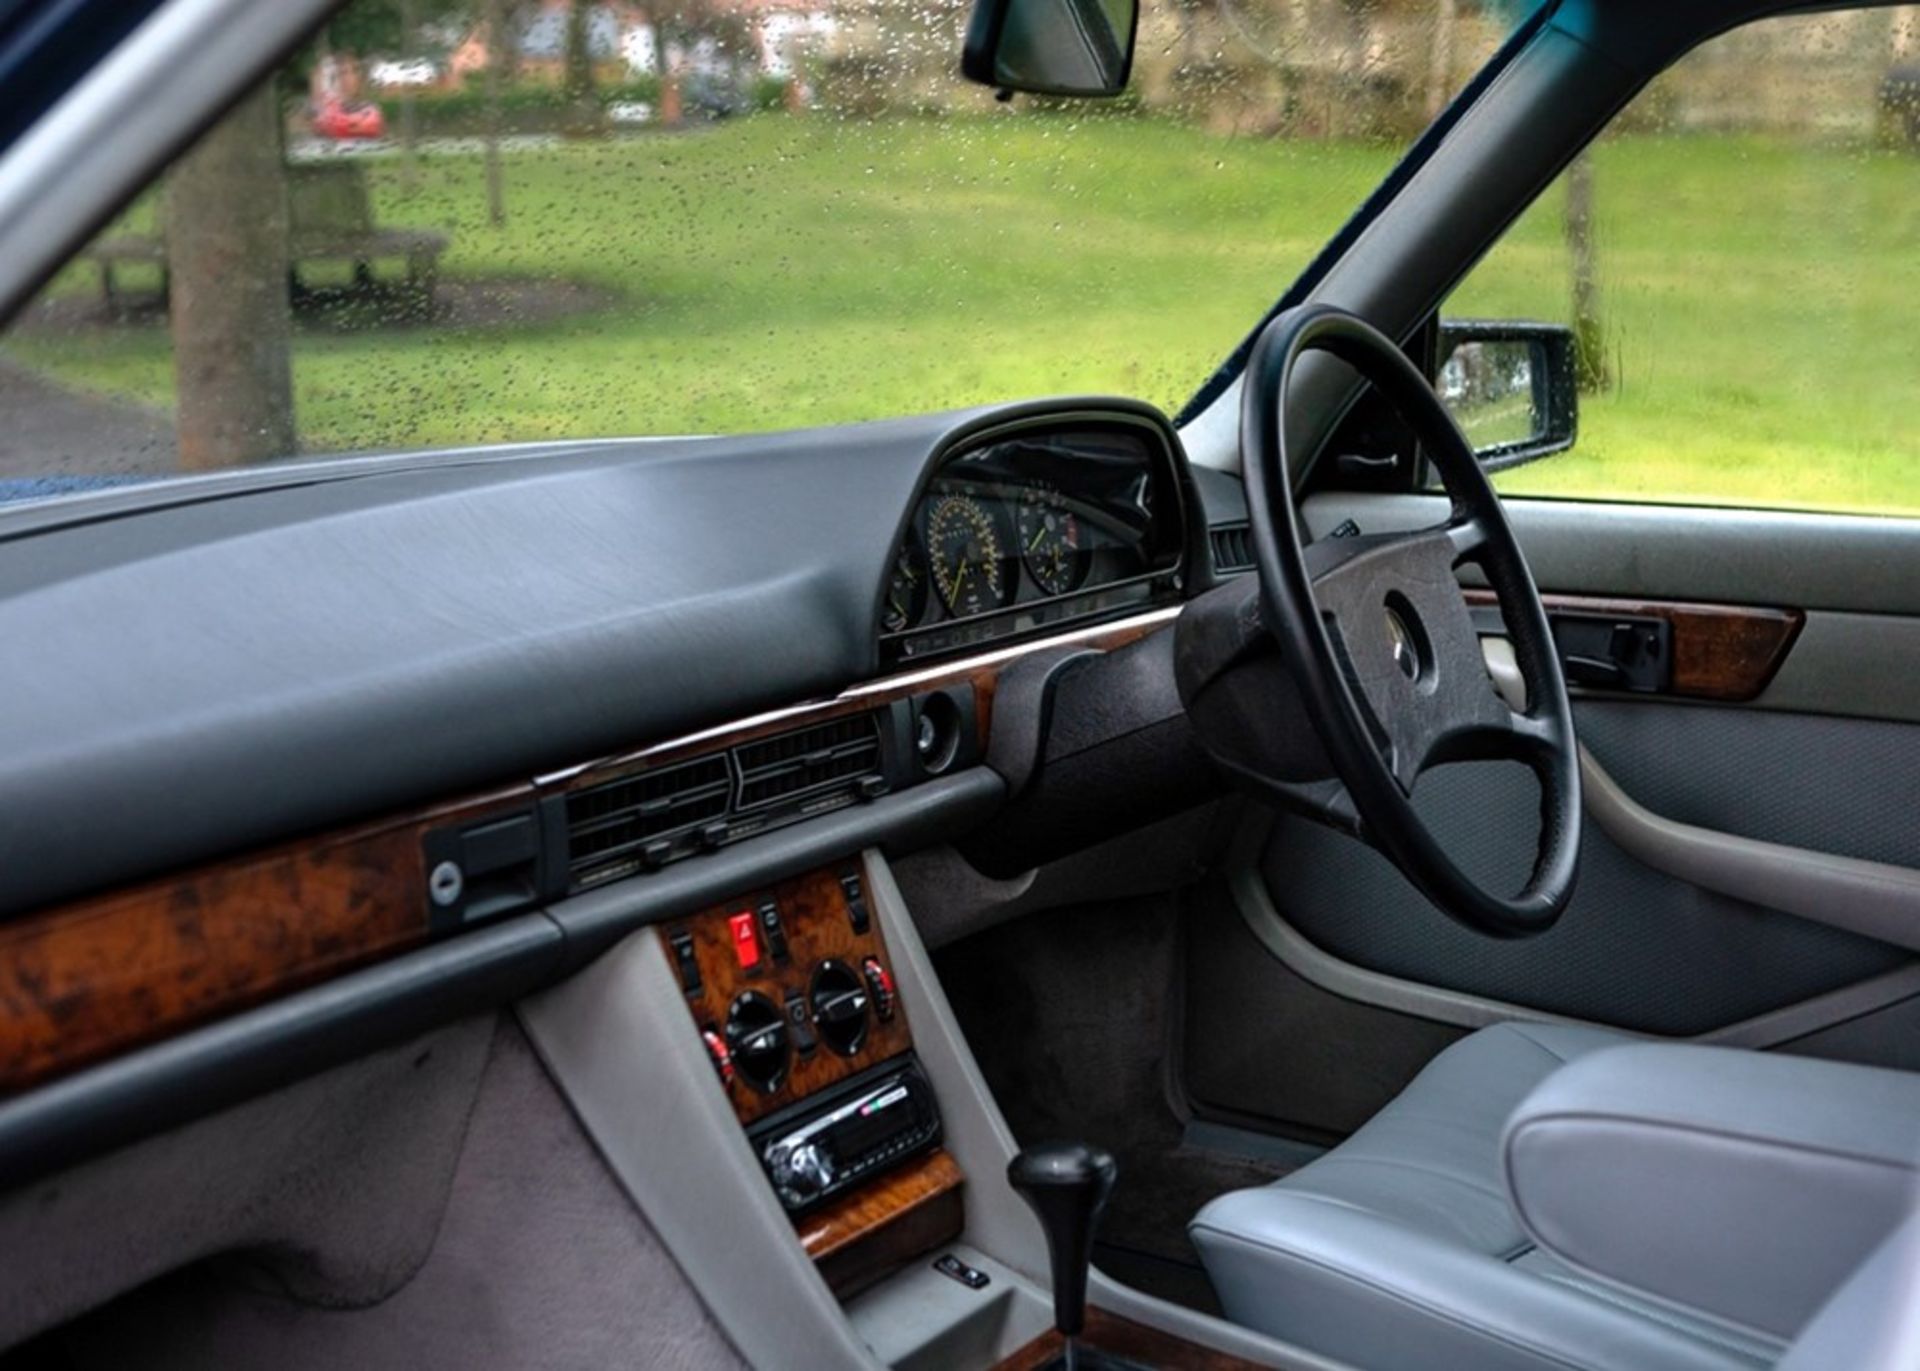 1988 Mercedes-Benz 500SE - Image 6 of 9